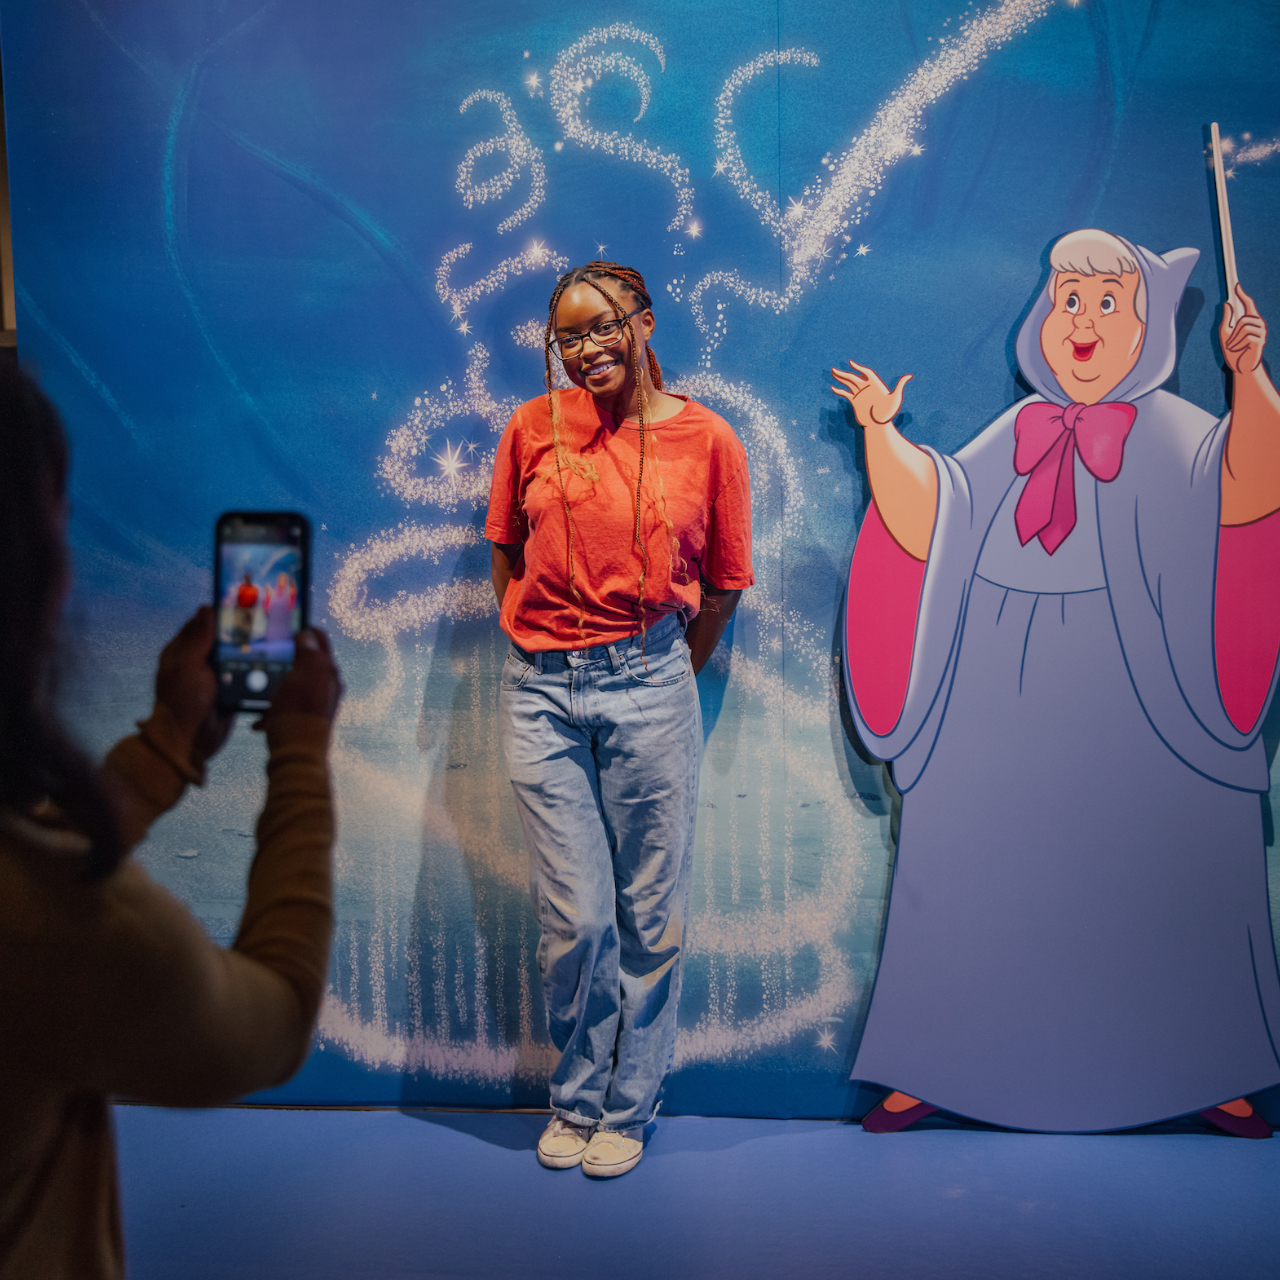 Erlebniswochenende bei Disney100: Die Ausstellung in München